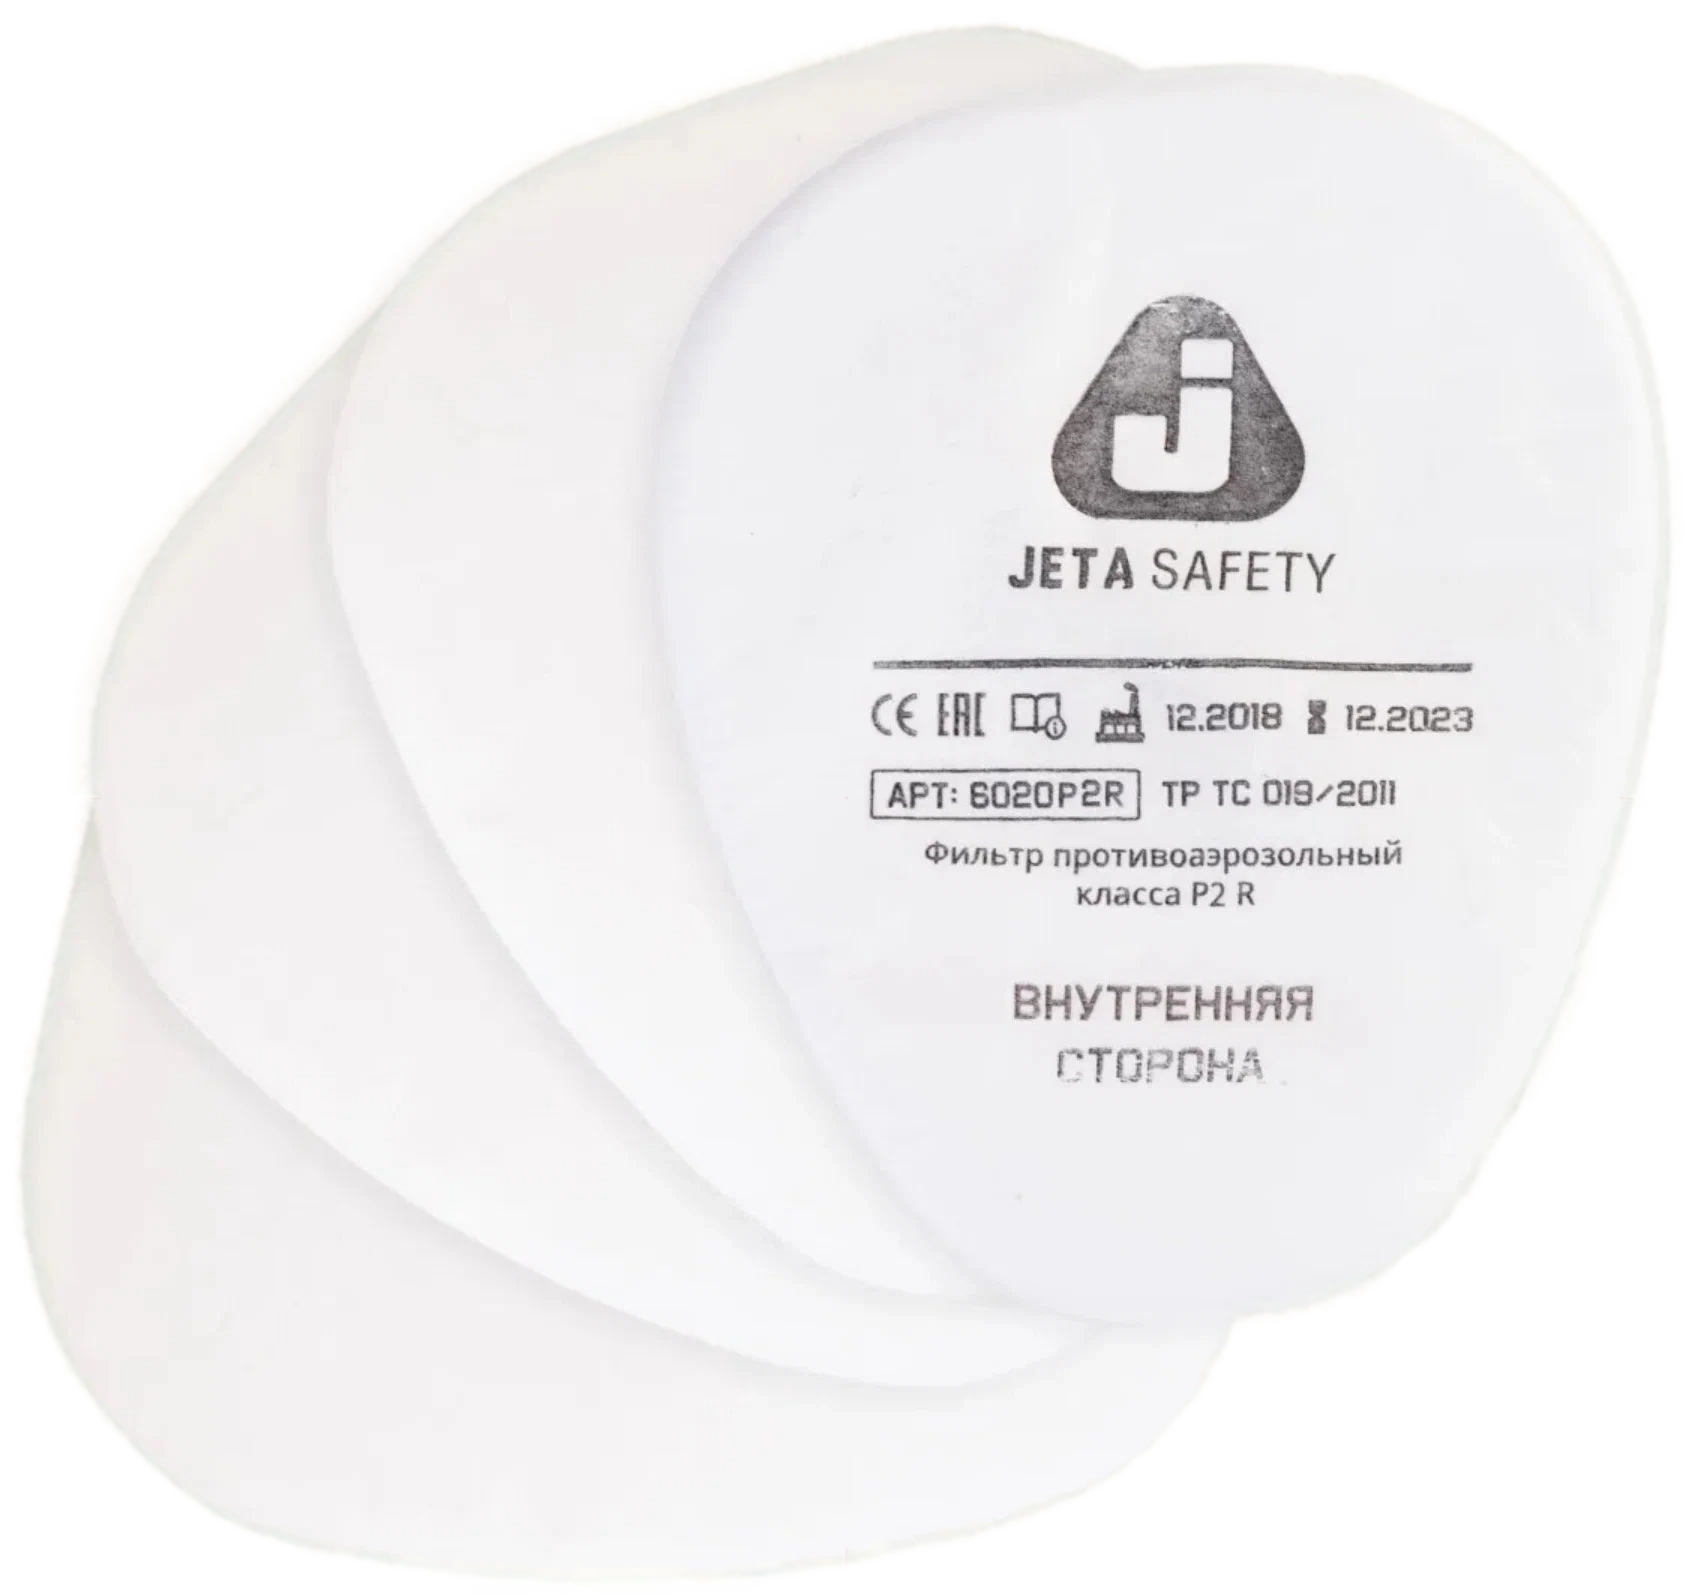 6020 Предфильтр для защиты от пыли и аэрозолей P2 JETA Safety, к-т 4 шт